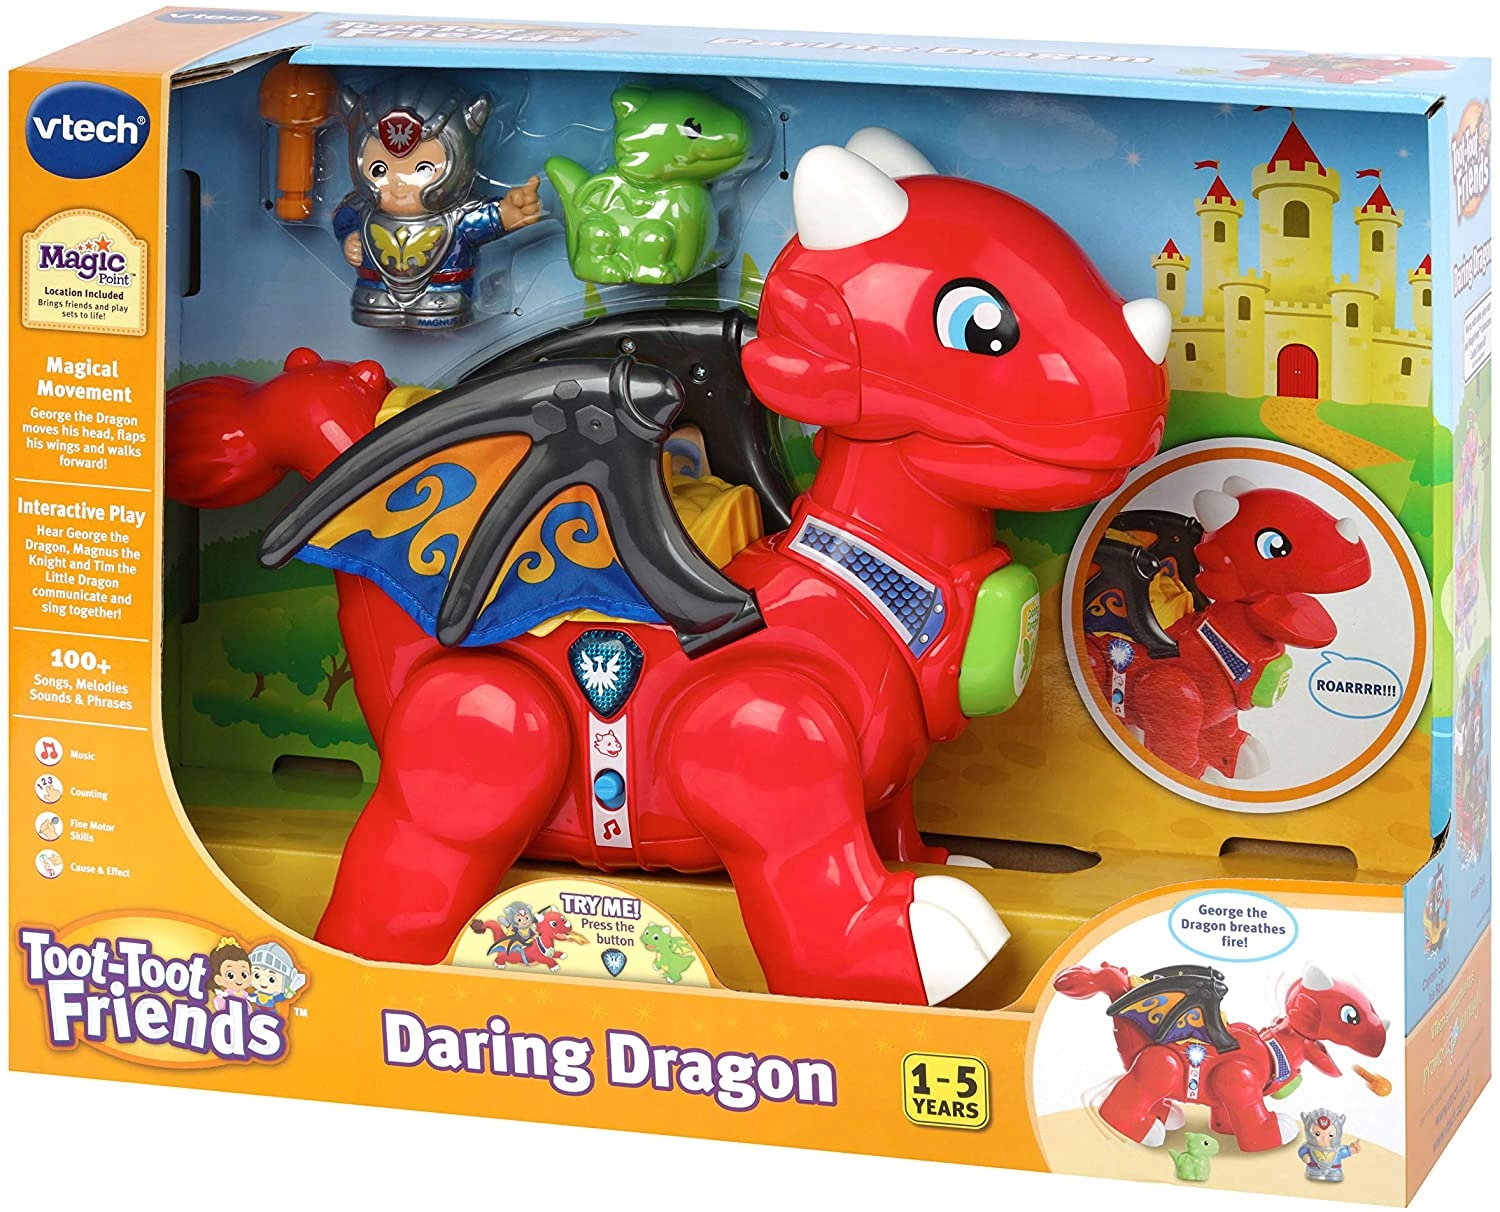 Daring Dragon